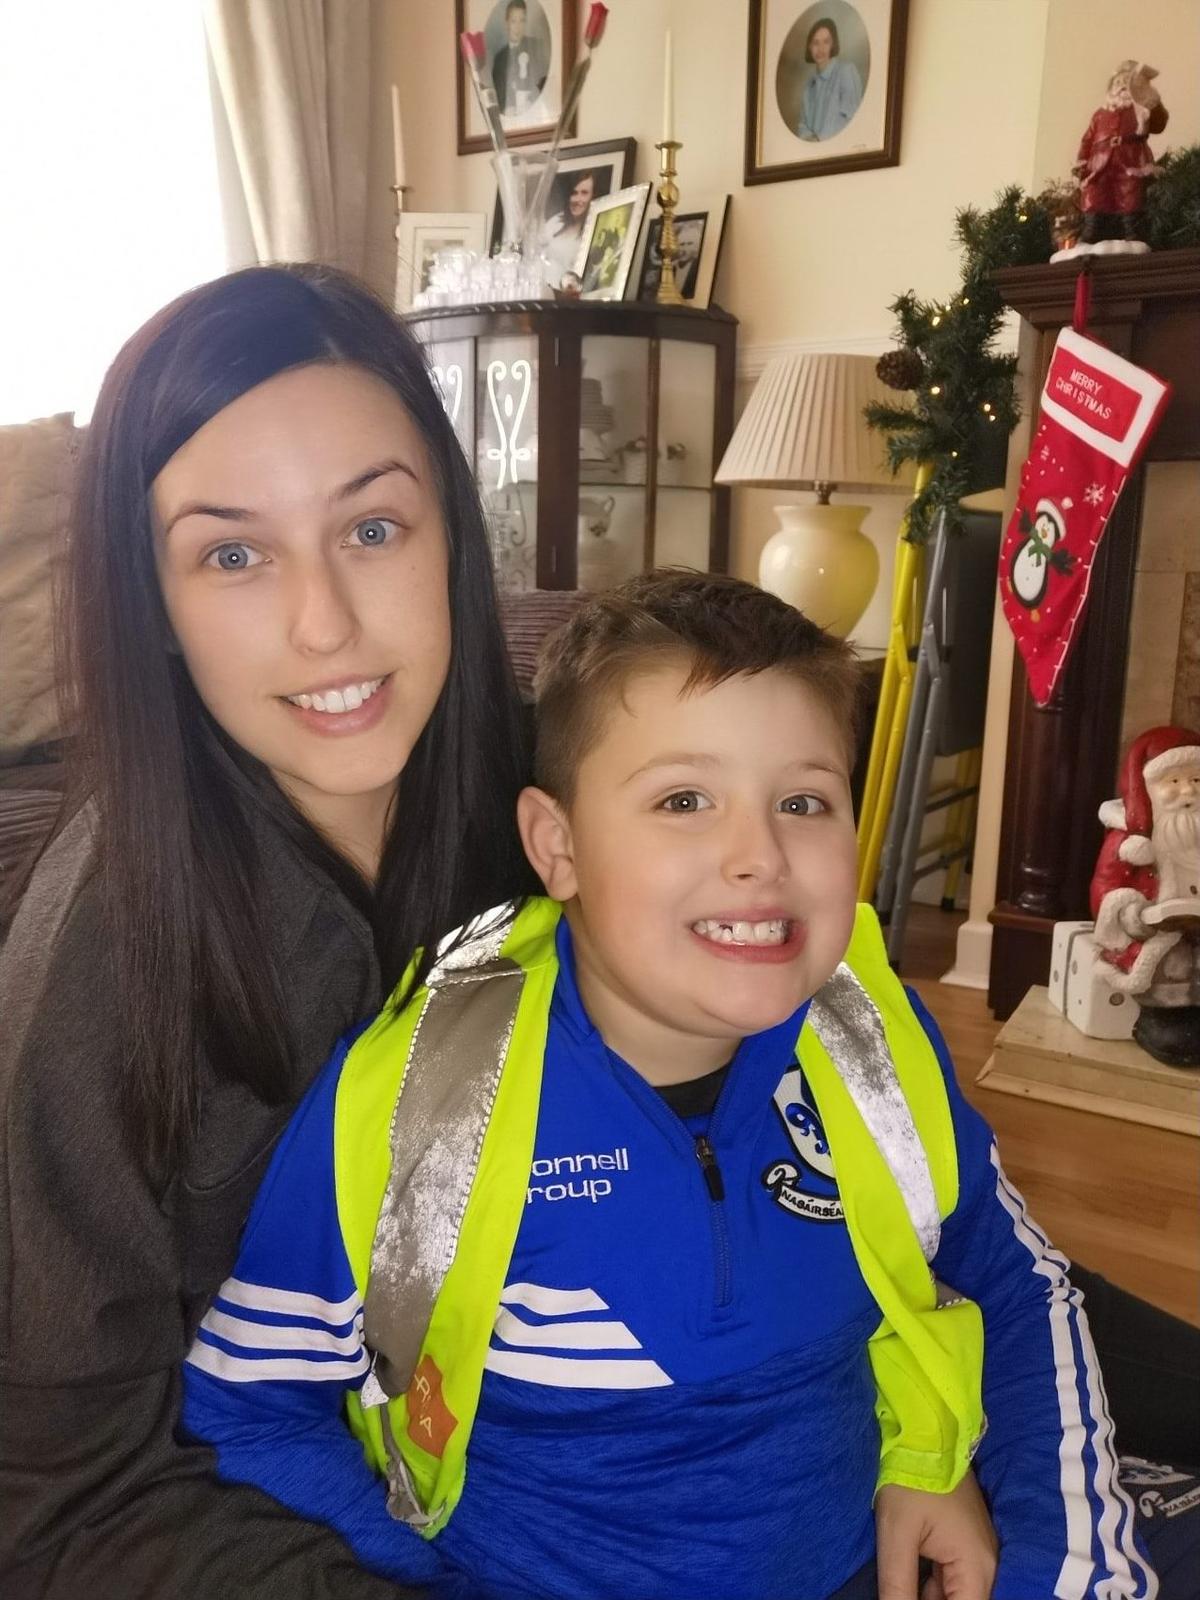 Nicole Duggan of Cork in Ireland with her 7-year-old son, Riley. (Courtesy of <a href="https://www.facebook.com/myboyblue2017/">Nicole Duggan</a>)